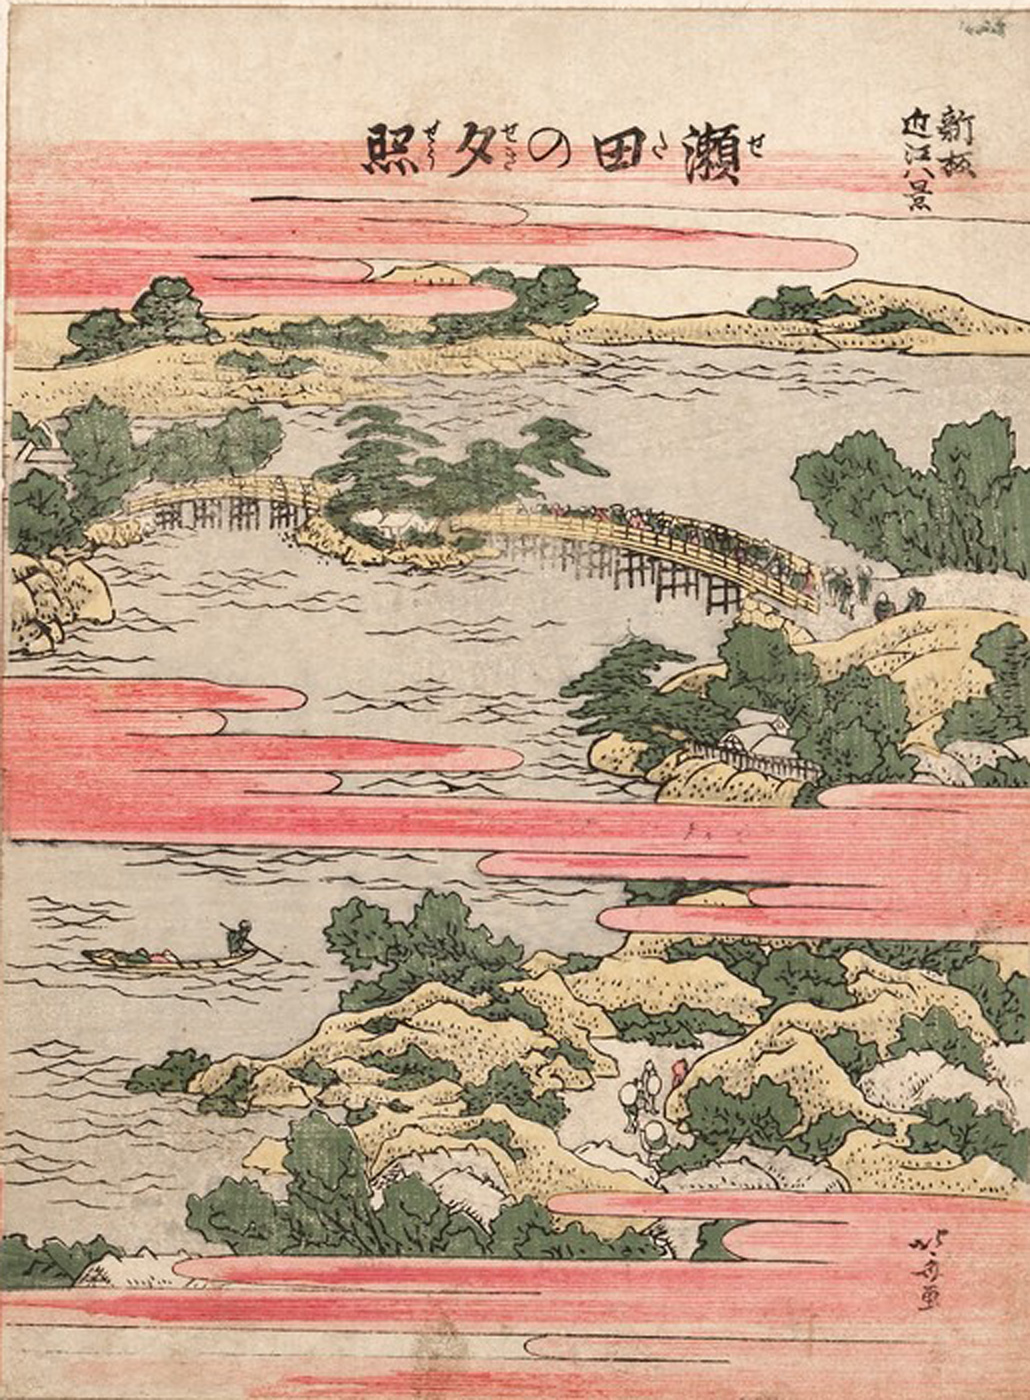 Hokusai - Evening Glow at Seta - 1802 Vertical Edition